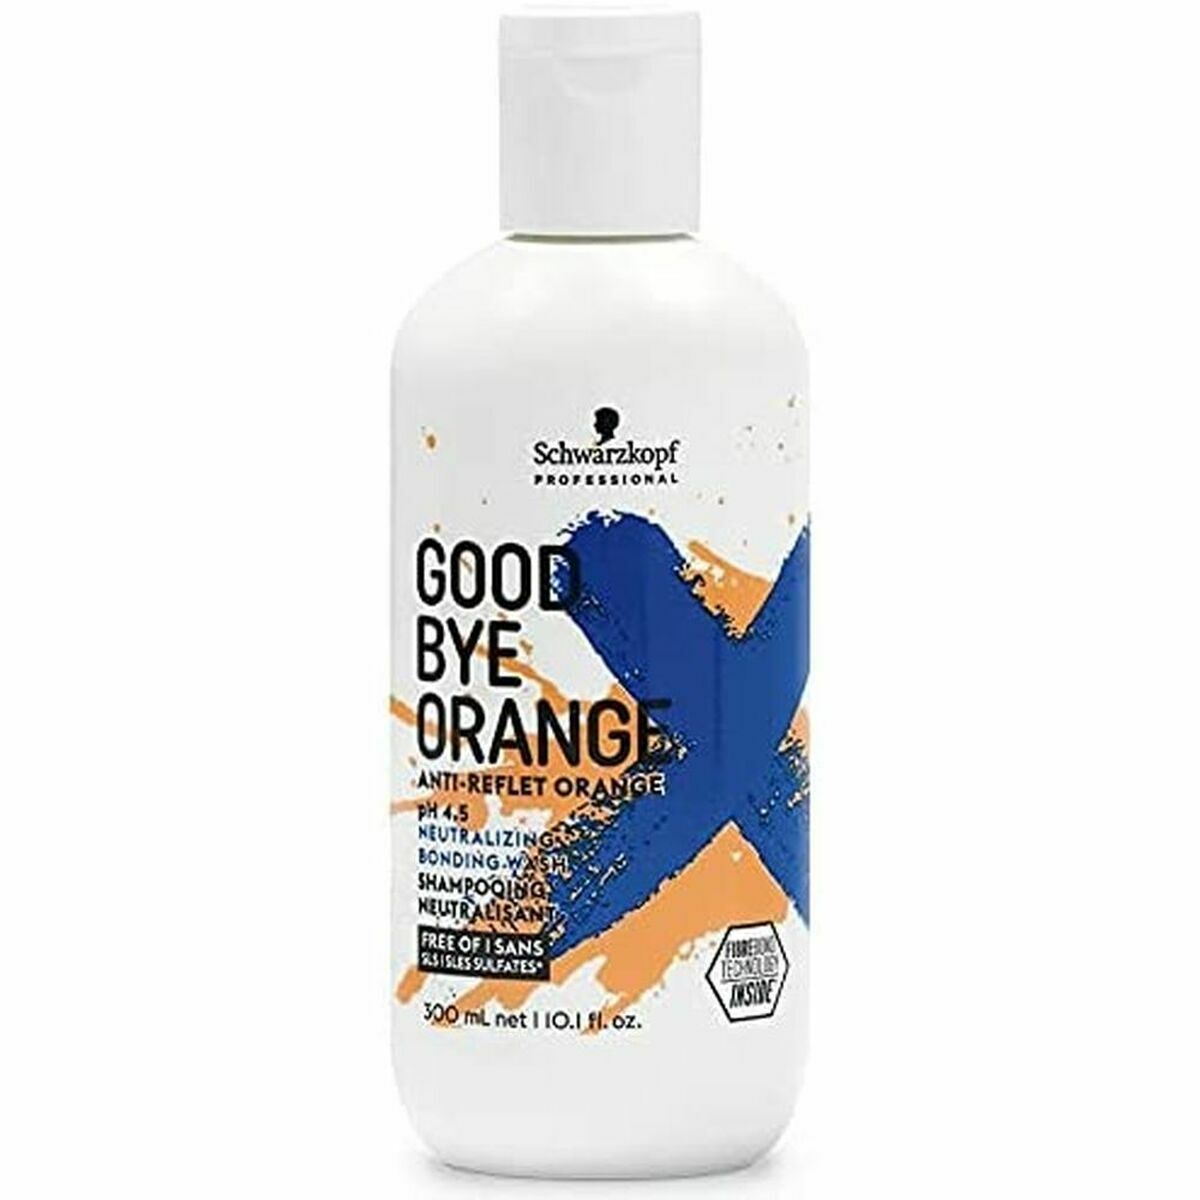 Shampoo Goodbye Orange Schwarzkopf (300 ml)